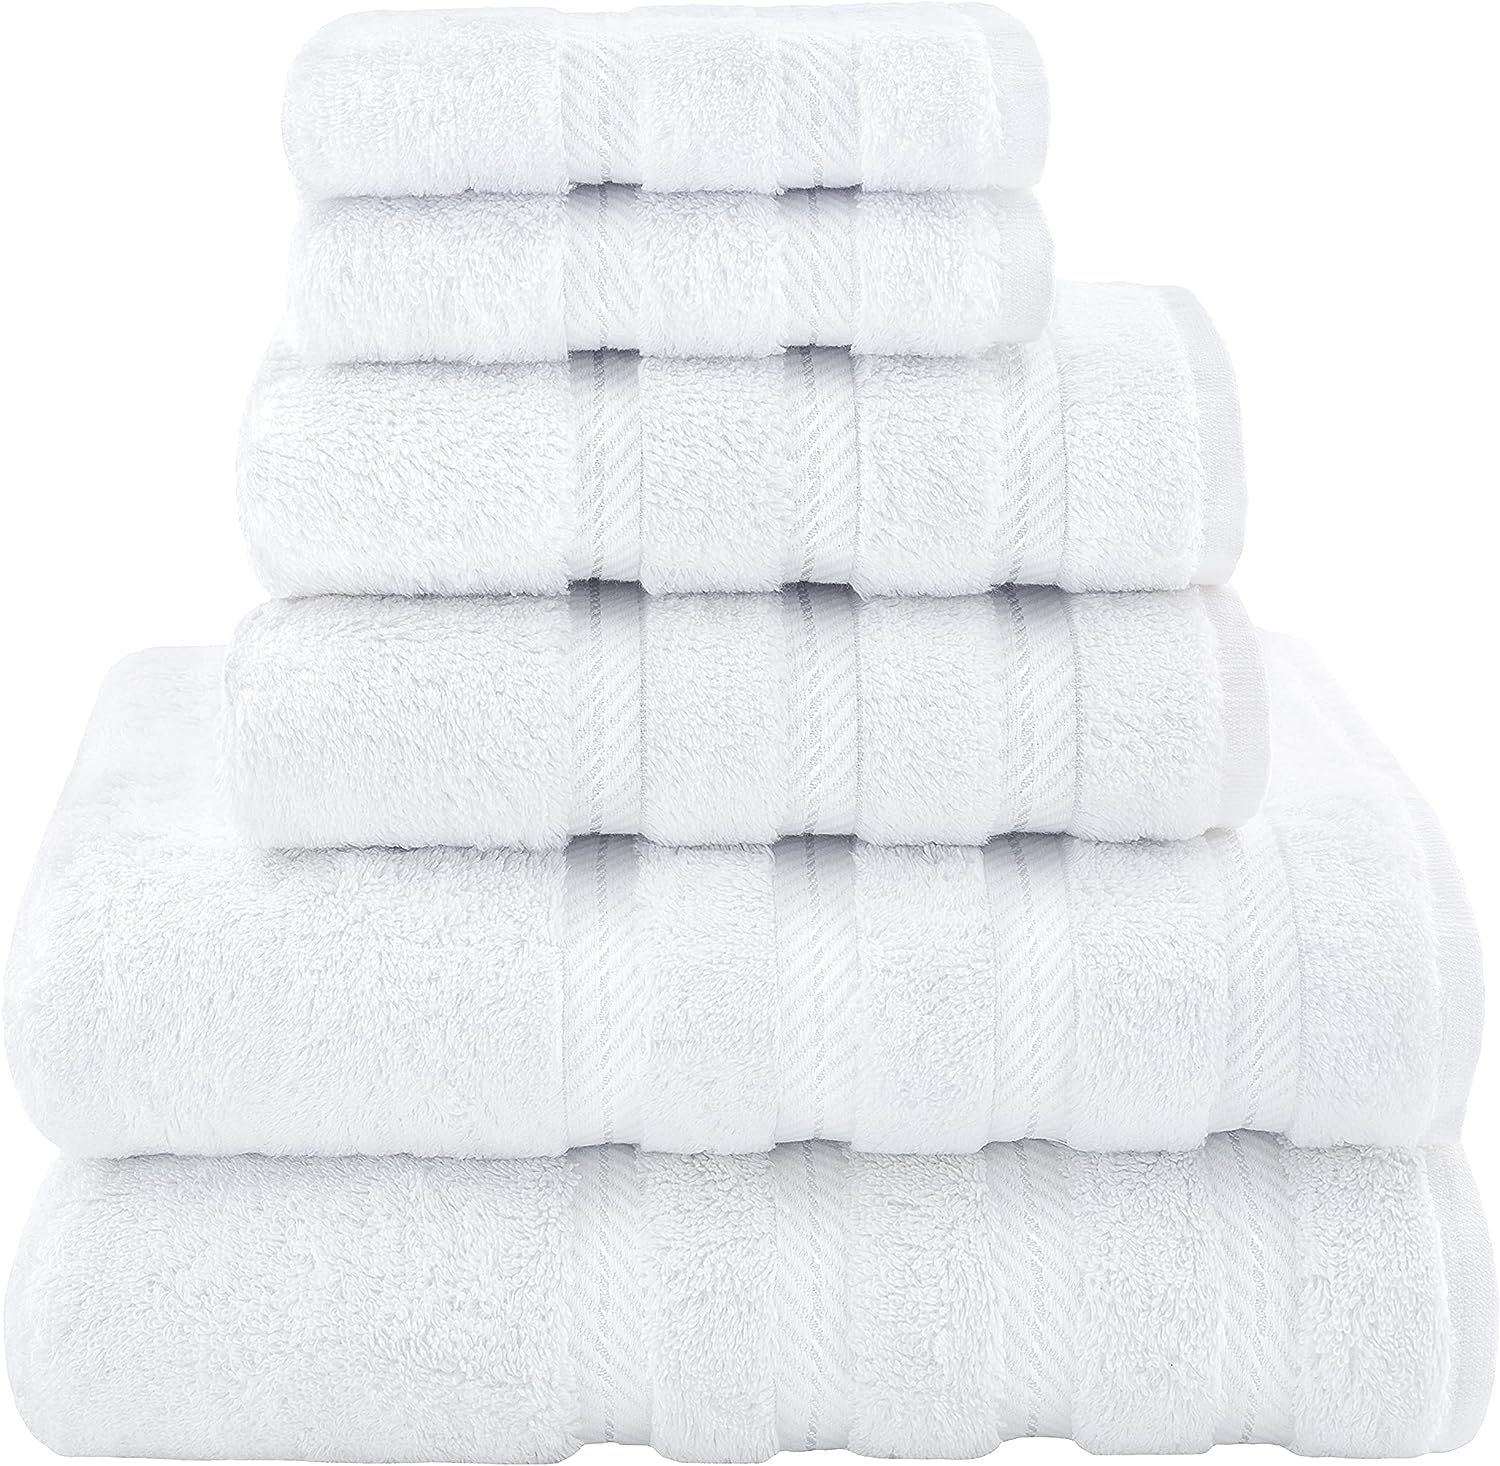 Elvana Home Juego de 6 toallas de algodón ultra suave que contiene 2  toallas de baño de 28 x 55 pulgadas, 2 toallas de mano de 16 x 24 pulgadas  y 2